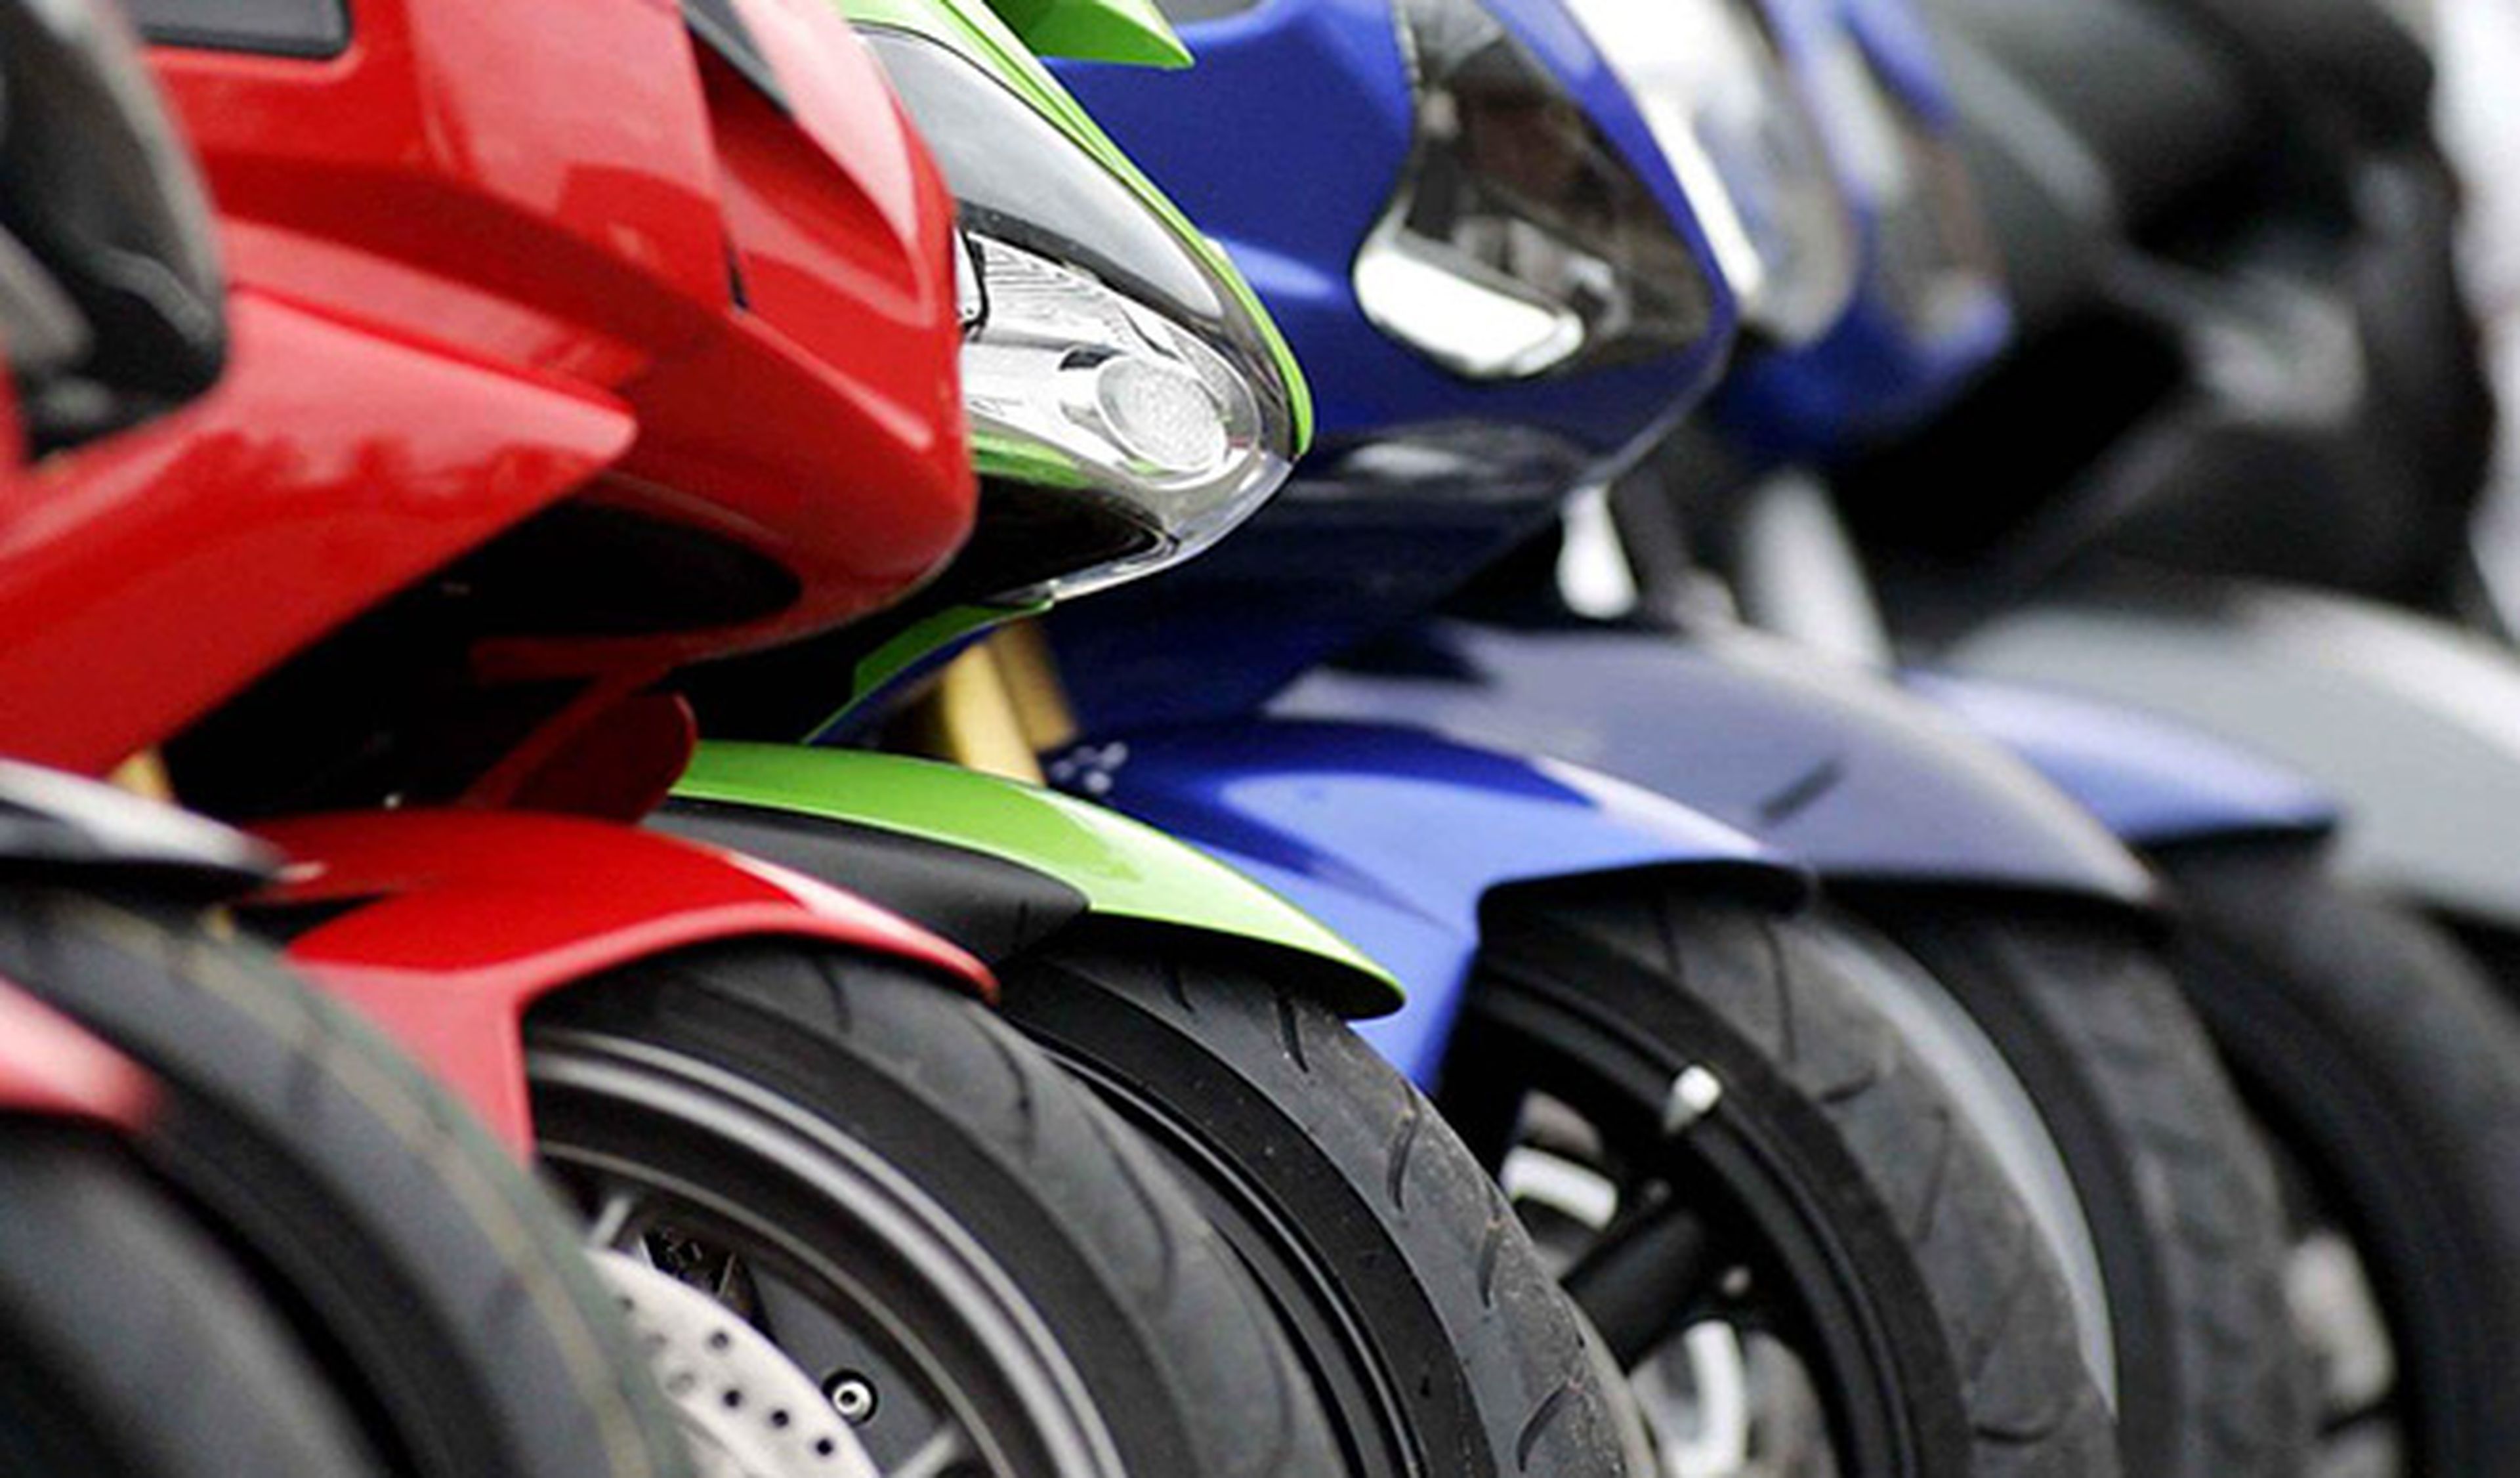 La 'moto' aboga por sustituir multas por formación vial